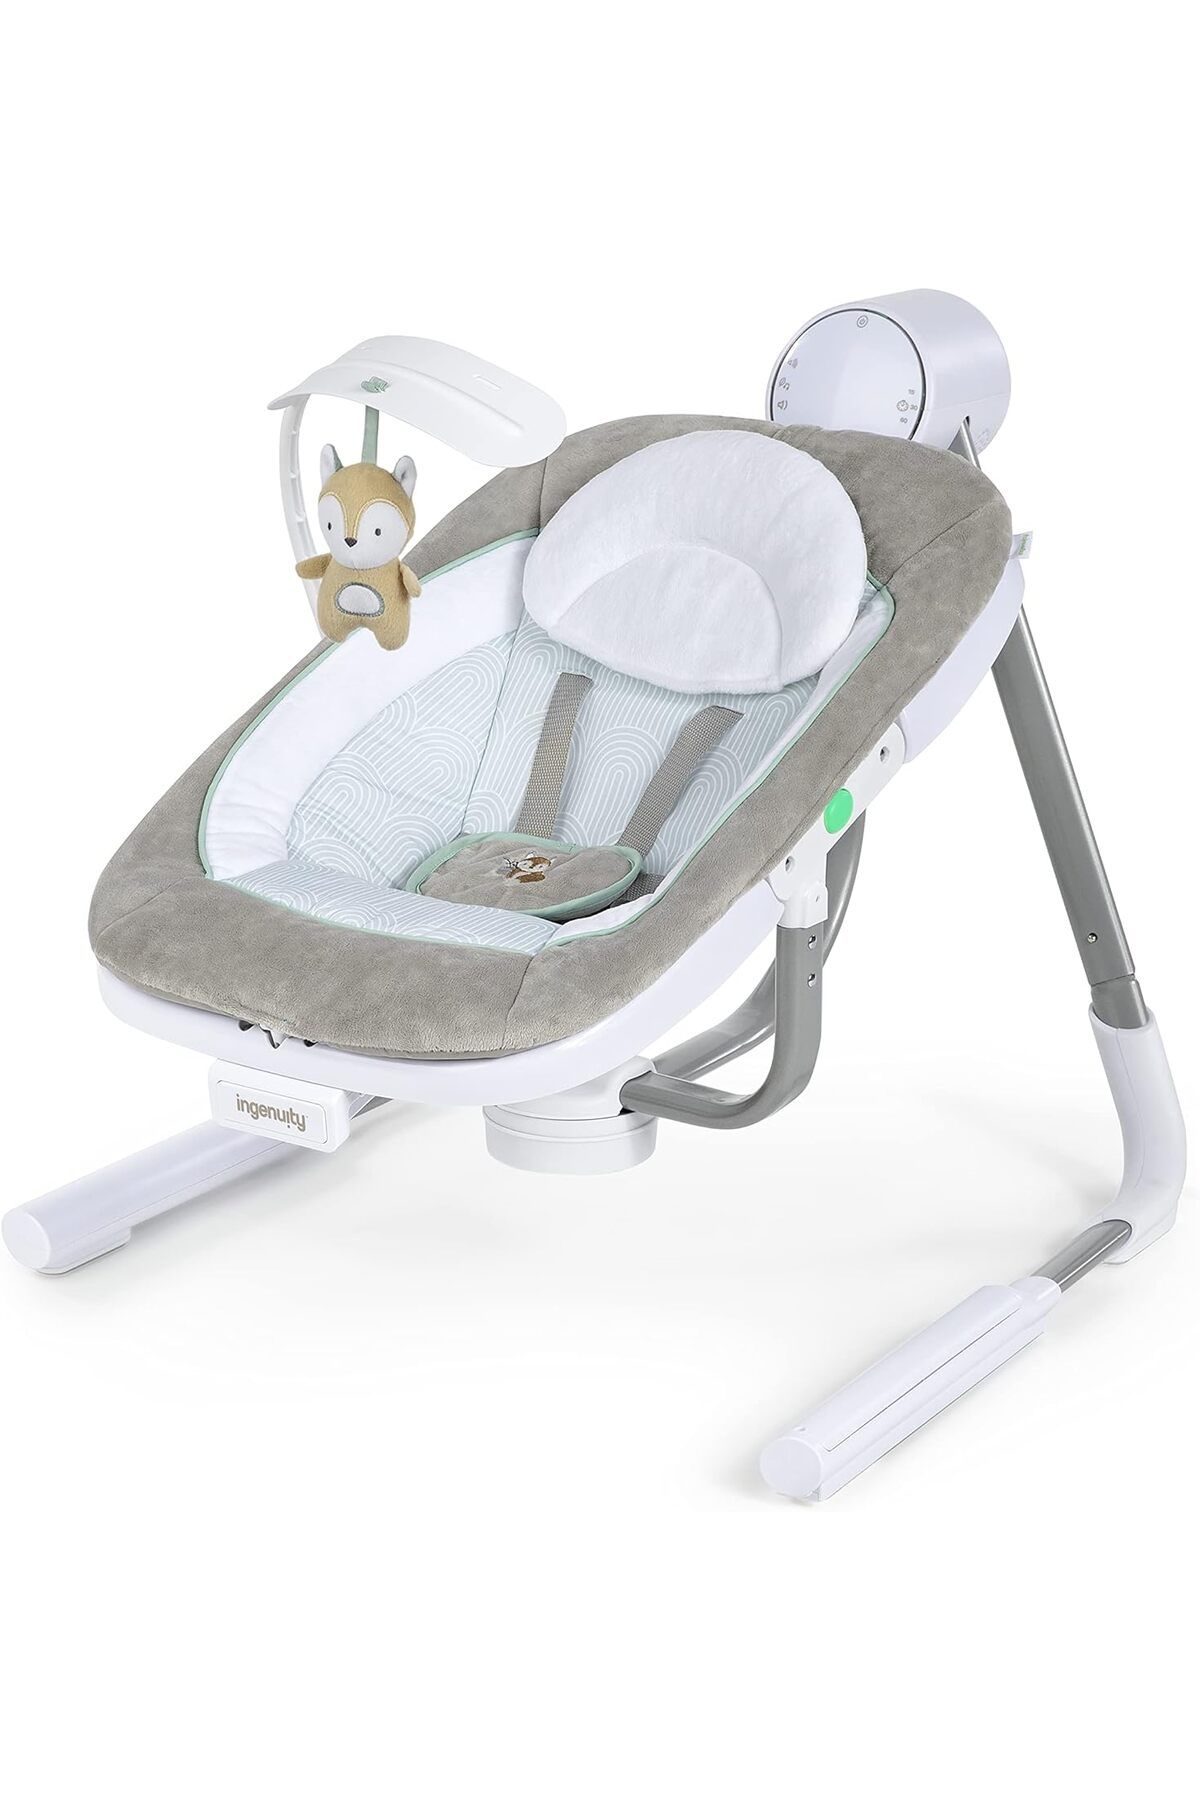 Ingenuity Taşınabilir, 5 Vitesli Bebek Salıncağı ve Titreşimli Koltuk - Doğa Sesleriyle Rahatlık!